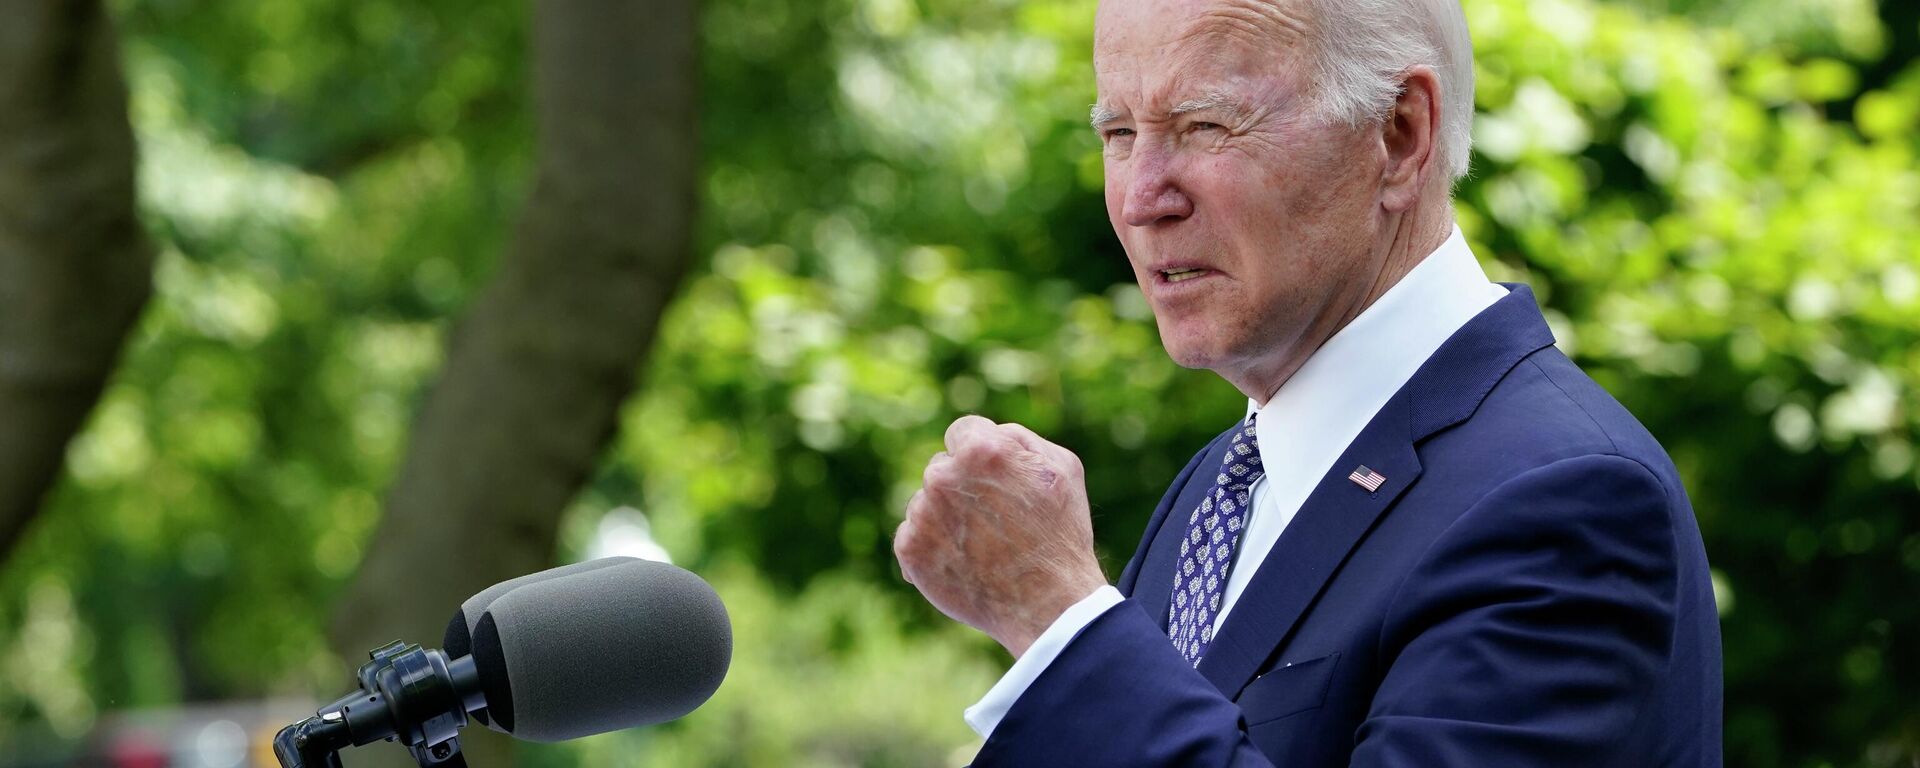 O presidente Joe Biden fala no Rose Garden da Casa Branca em Washington, durante uma recepção para celebrar o Mês do Patrimônio Ásio-Americano, Nativo do Havaí e das Ilhas do Pacífico, em 17 de maio de 2022 - Sputnik Brasil, 1920, 23.05.2022